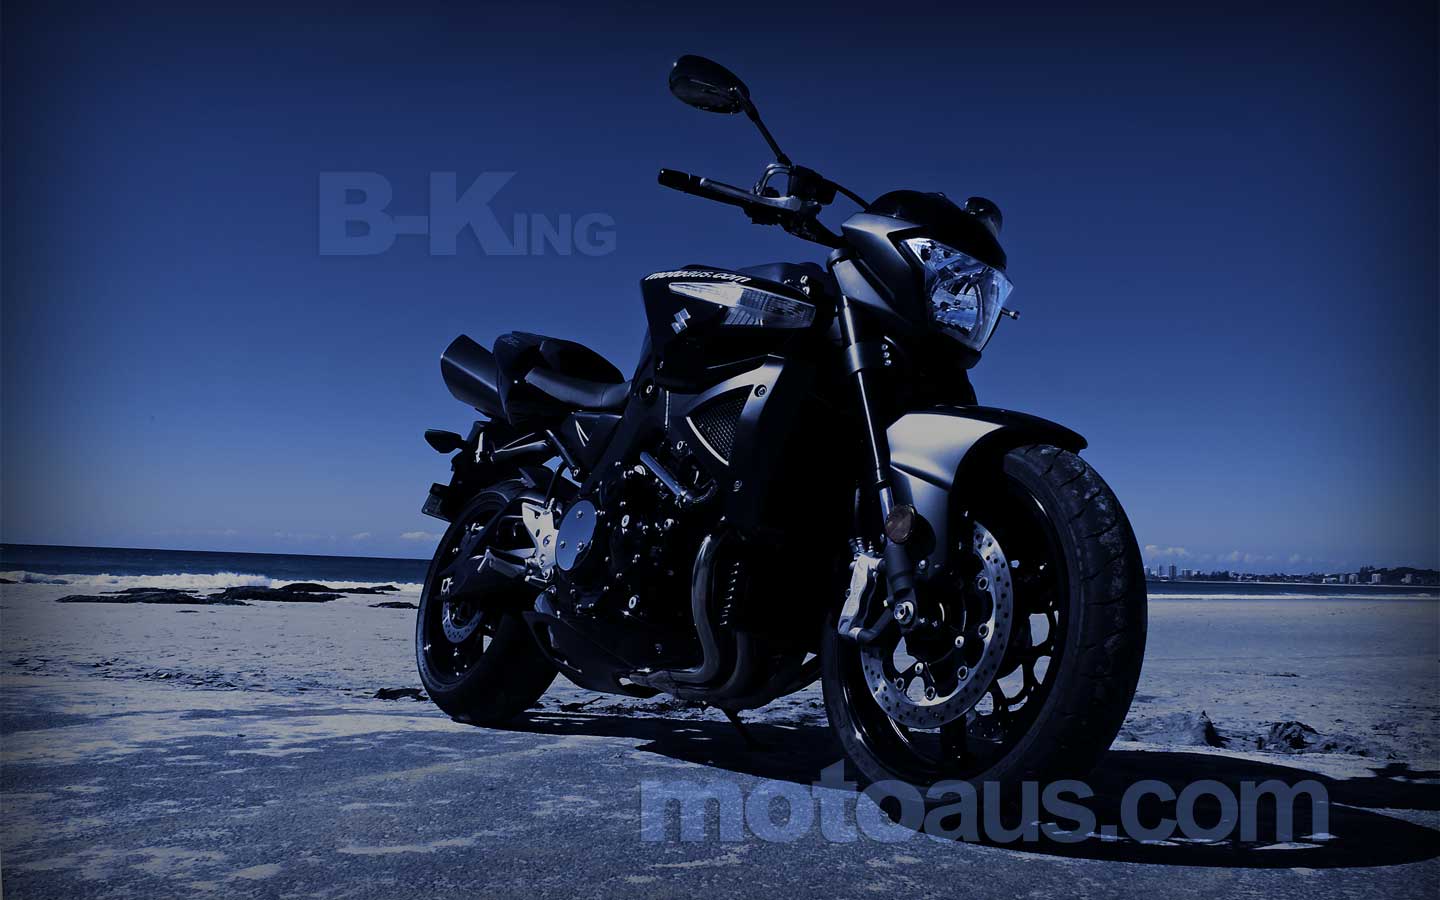 Suzuki B King Desktop Wallpaper 1440 Widescreen   Motoauscom